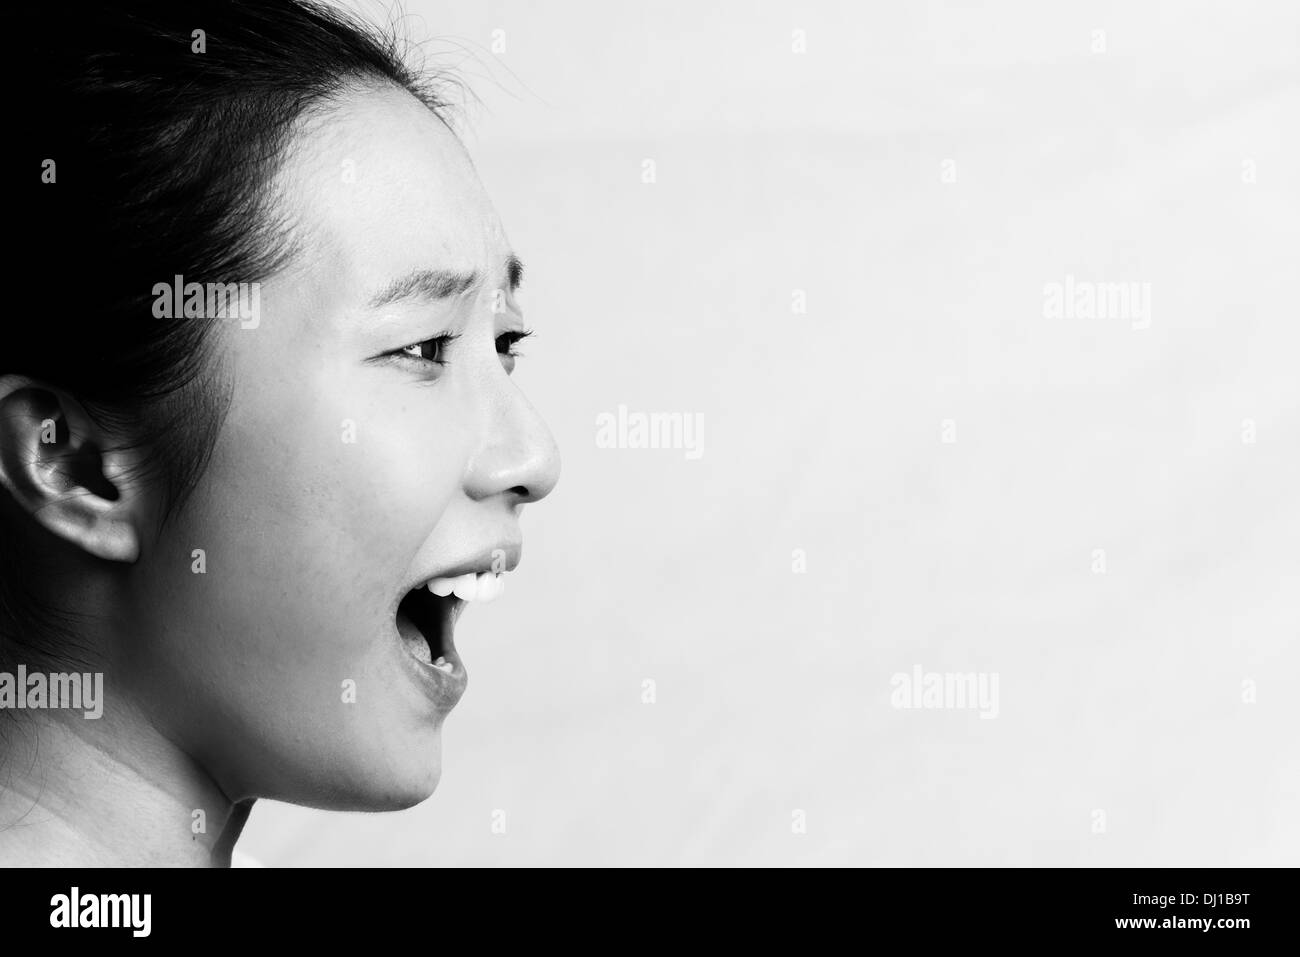 Portrait de jeune fille attirante hurler à la colère, style noir et blanc Banque D'Images